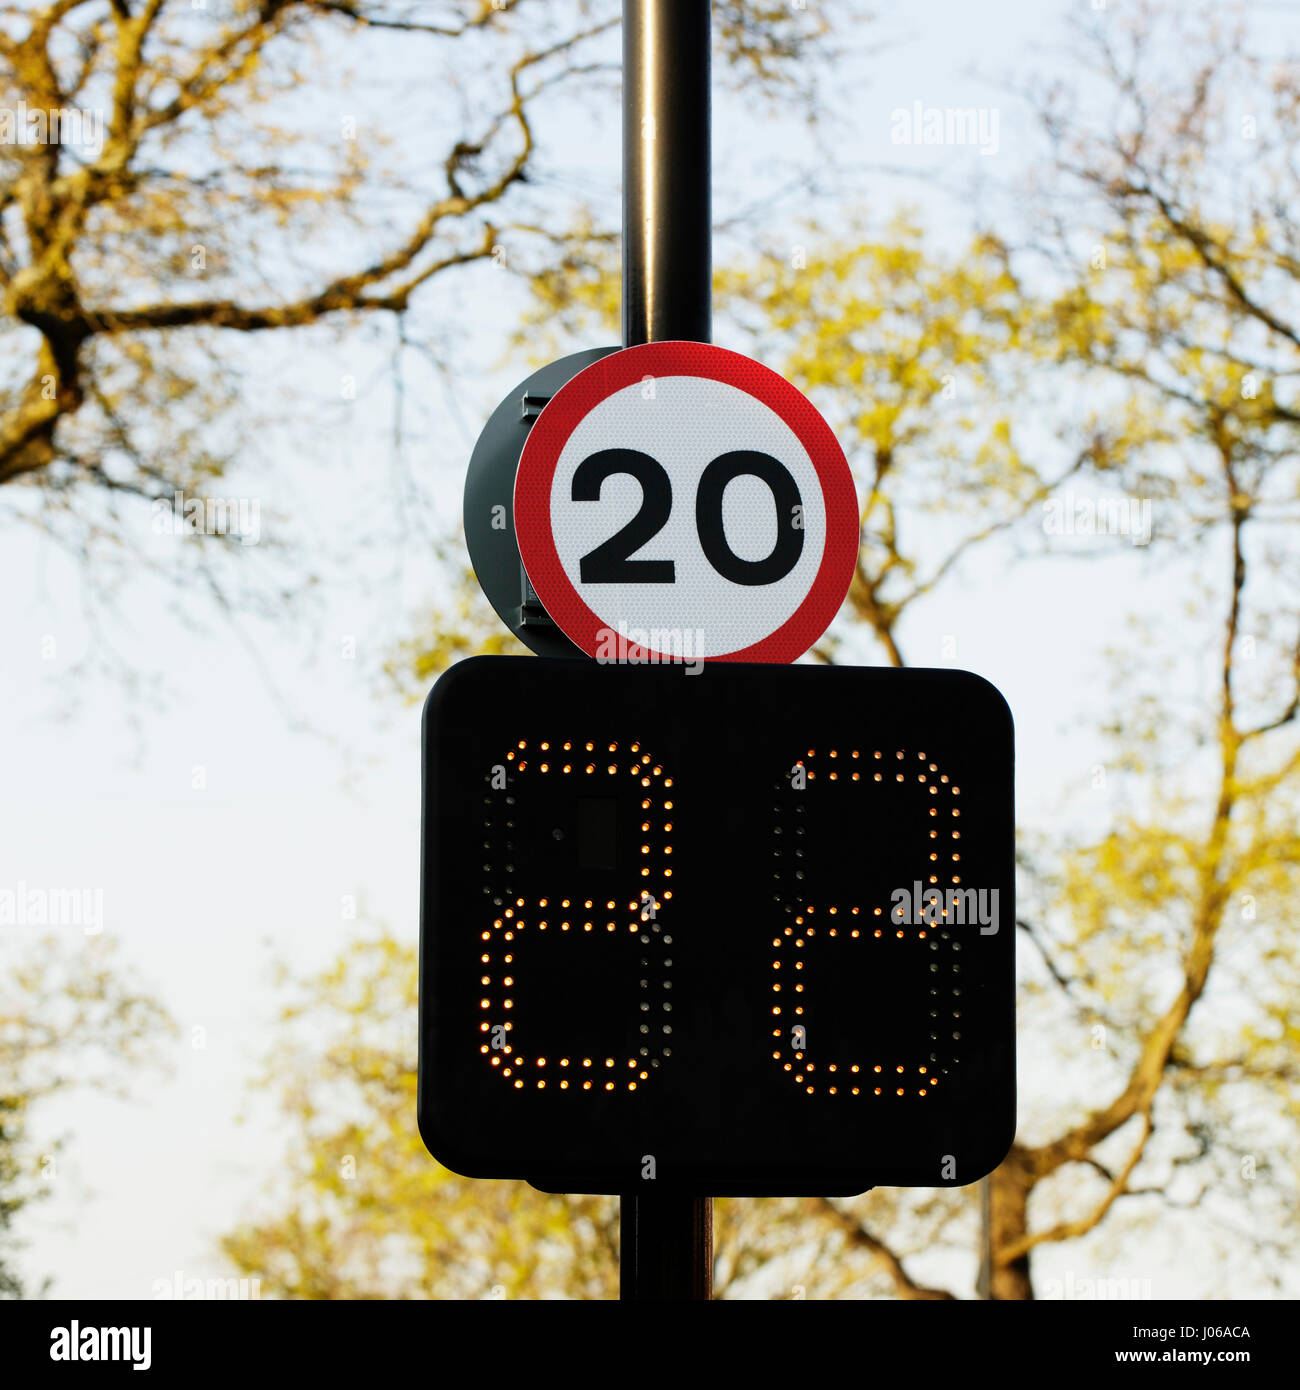 La limite de vitesse de 20 mi/h avec panneau indicateur de vitesse de connexion Banque D'Images